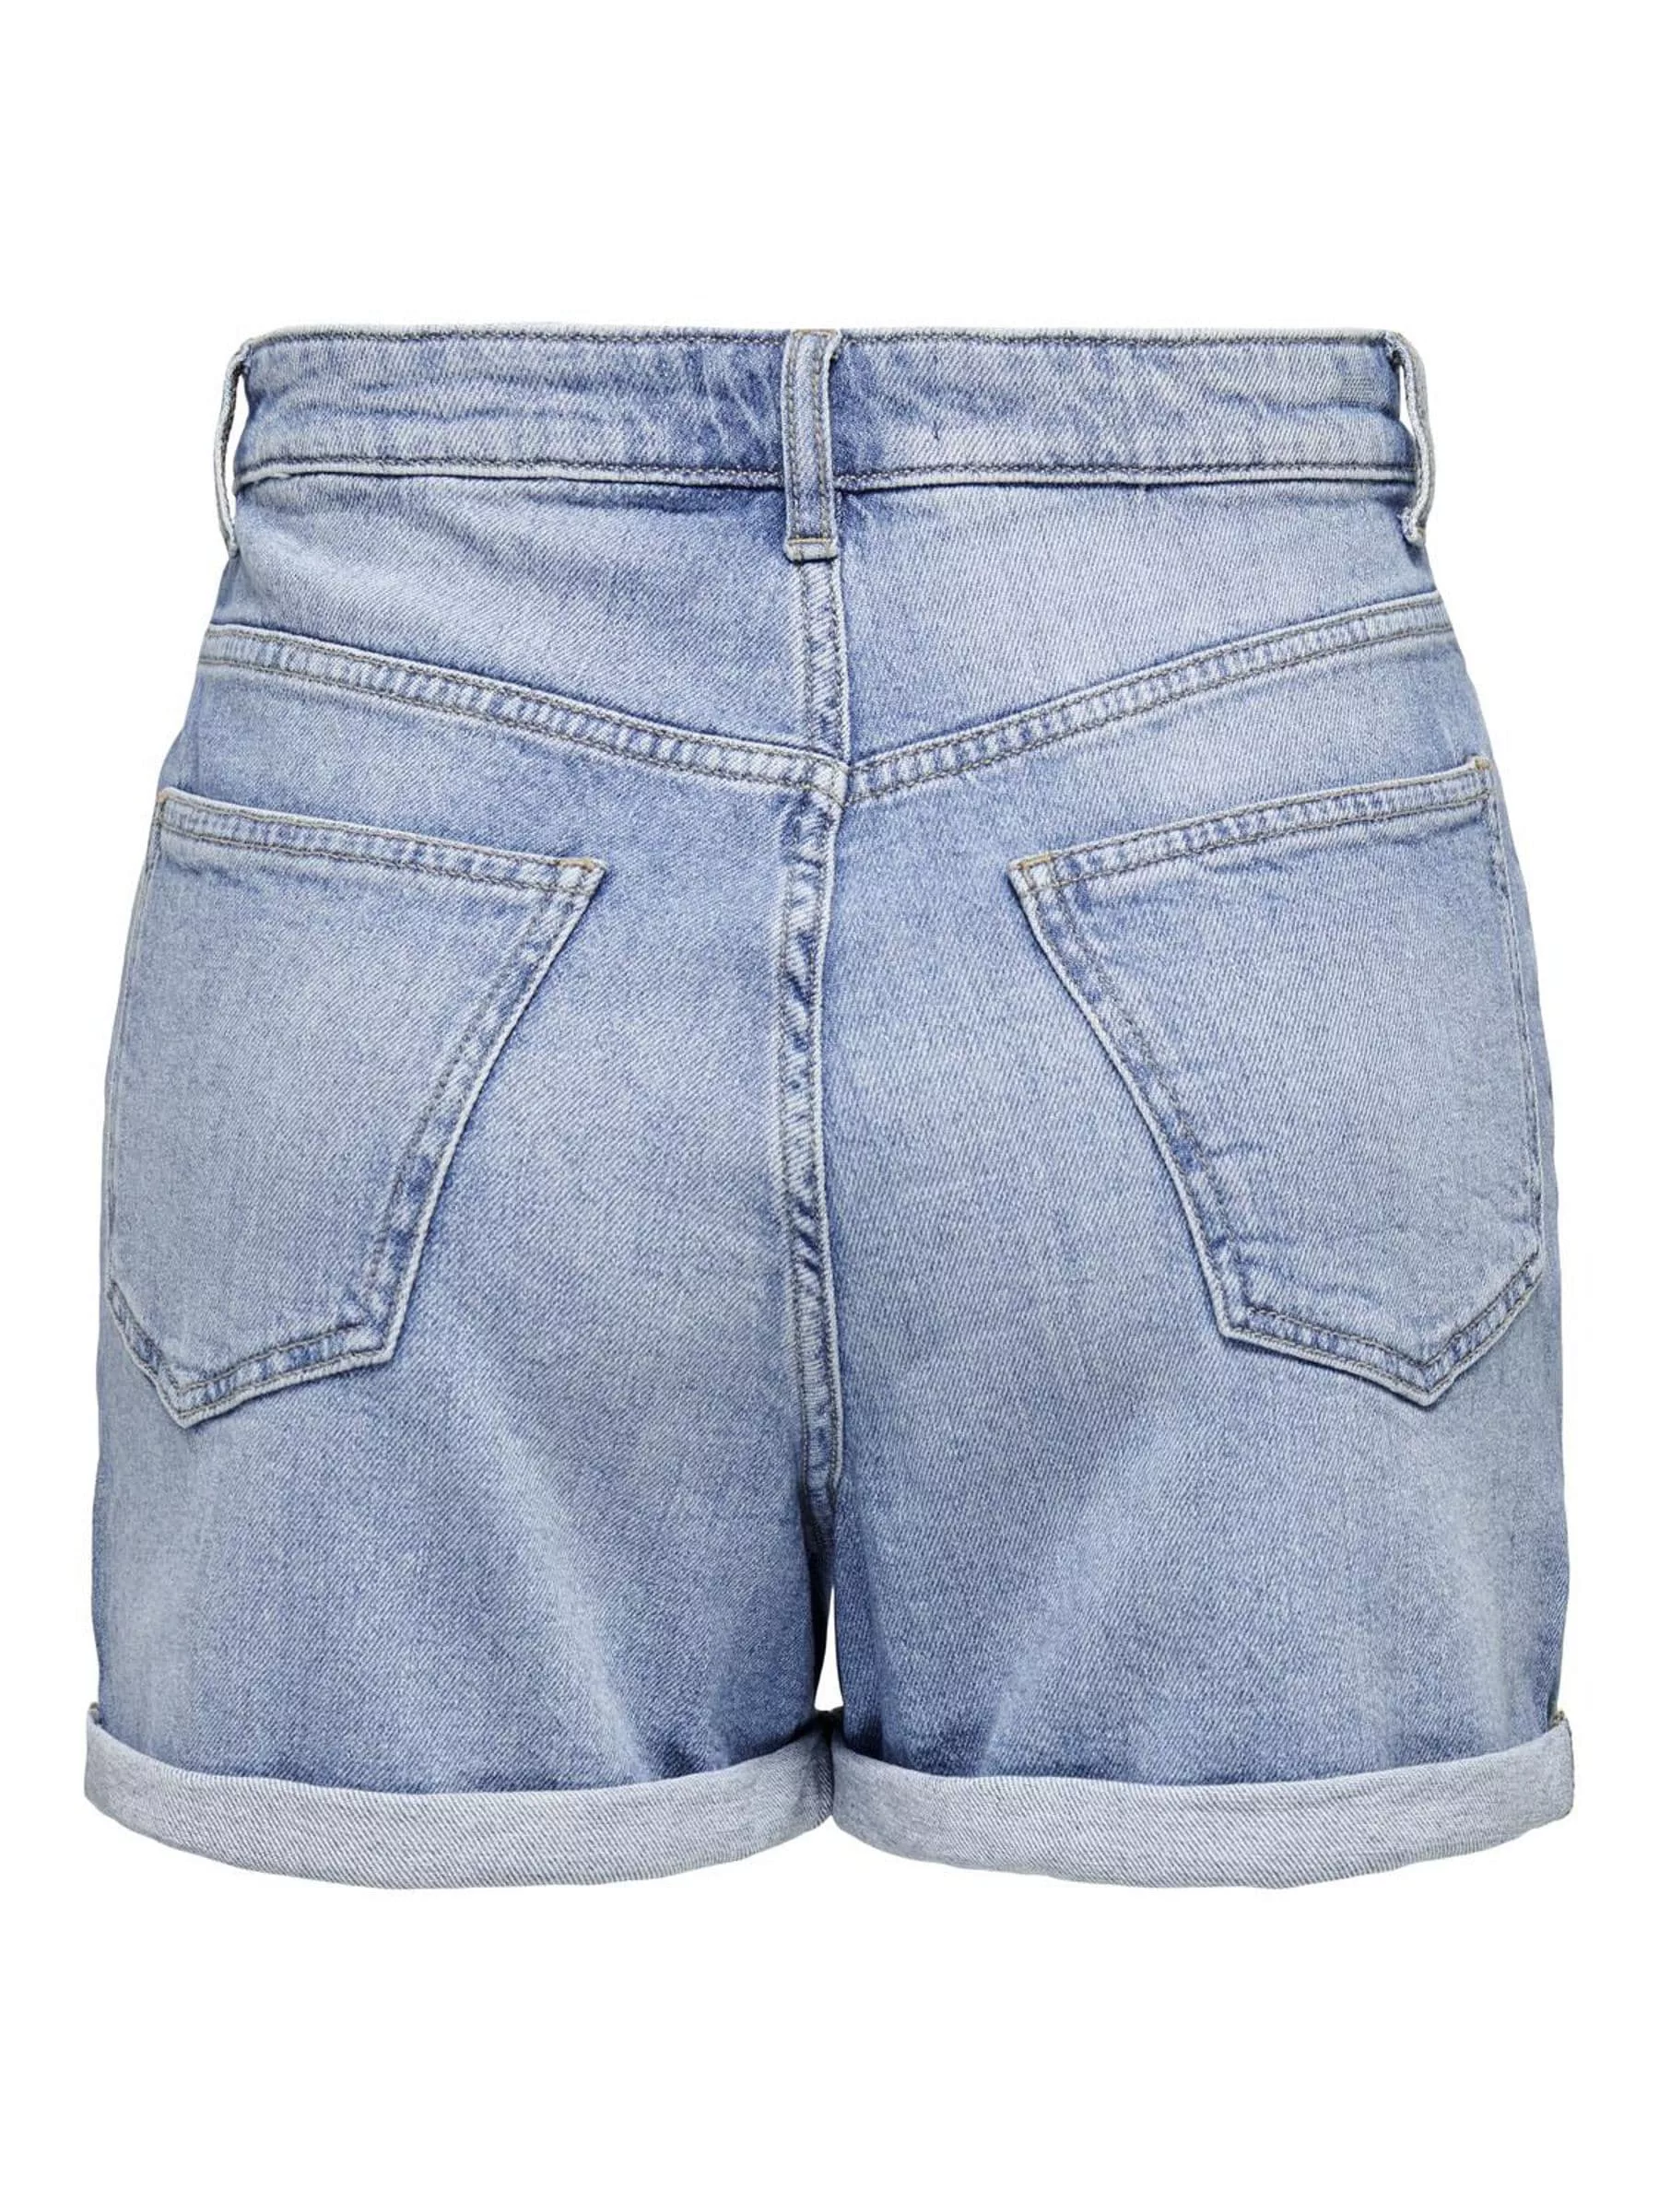 ONLY Jeansshorts Shorts Denim Bermudas High Waist 7684 in Hellblau günstig online kaufen